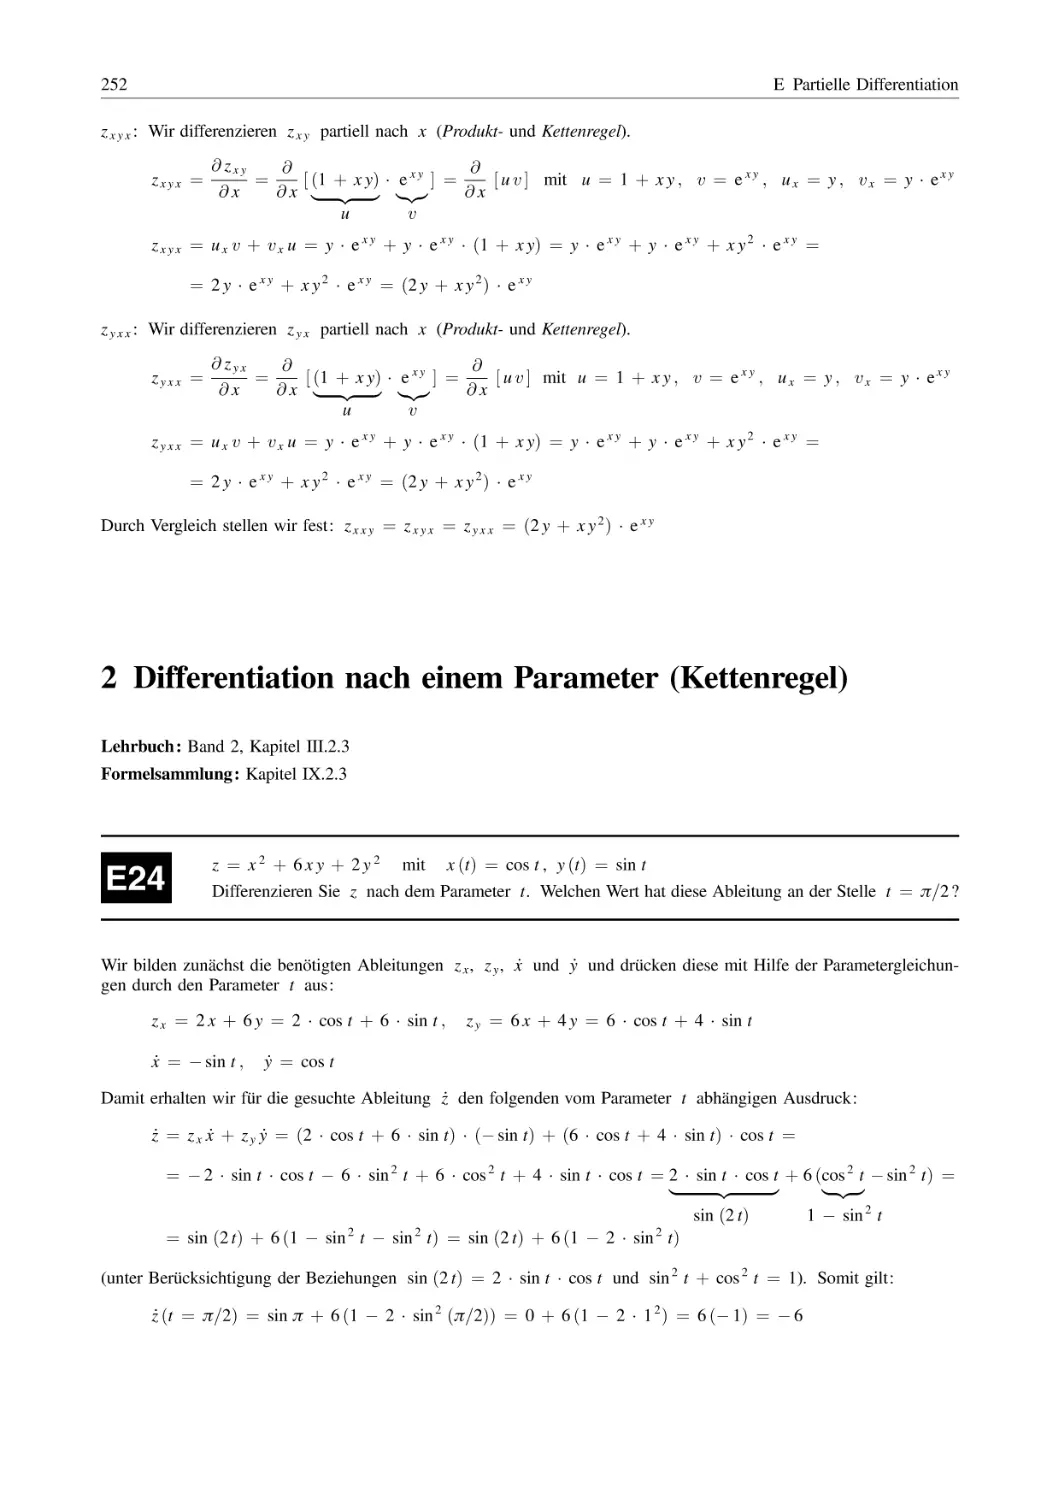 2 Differentiation nach einem Parameter (Kettenregel)